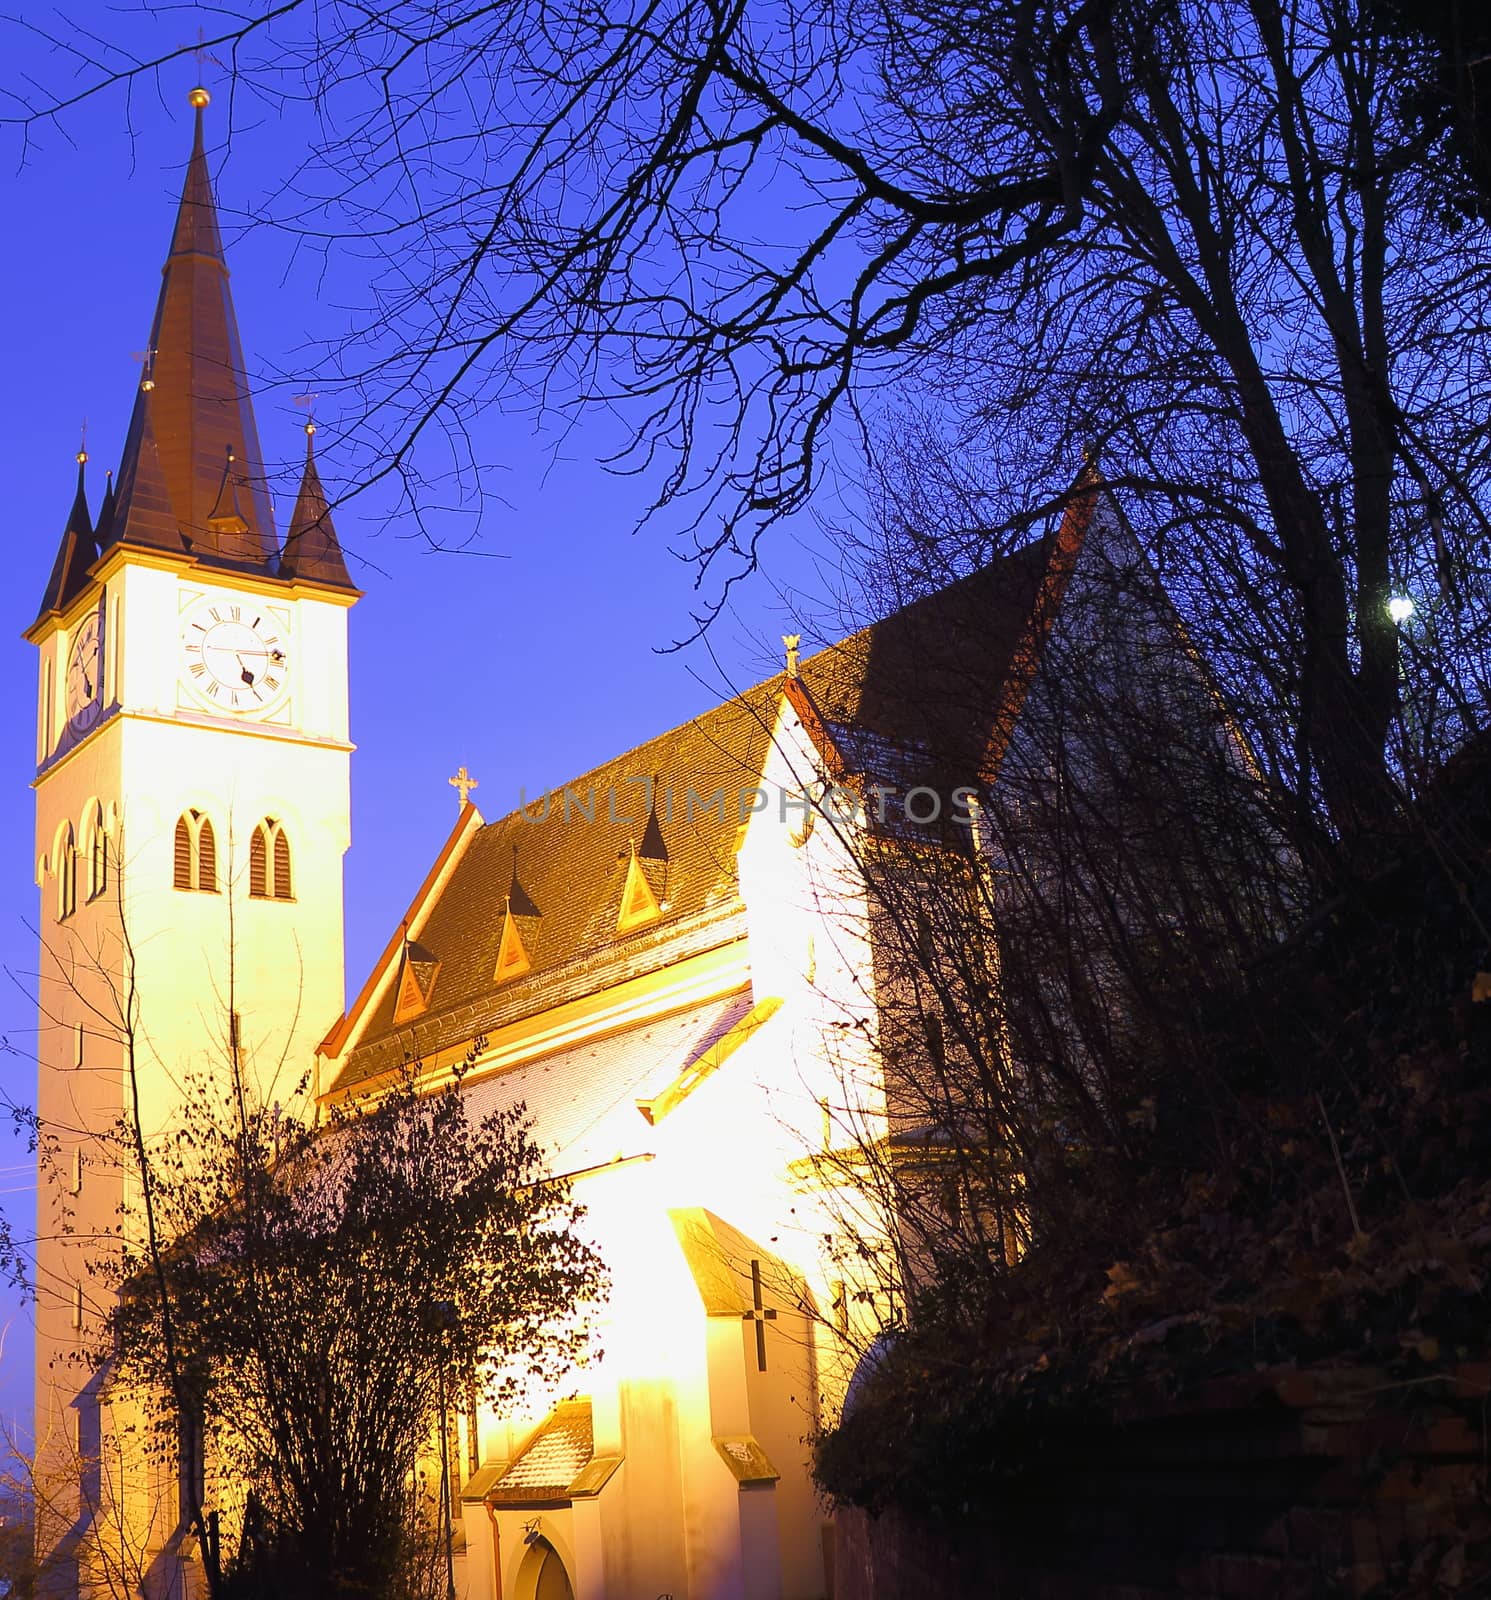 Kirche Erolzheim by robertboss